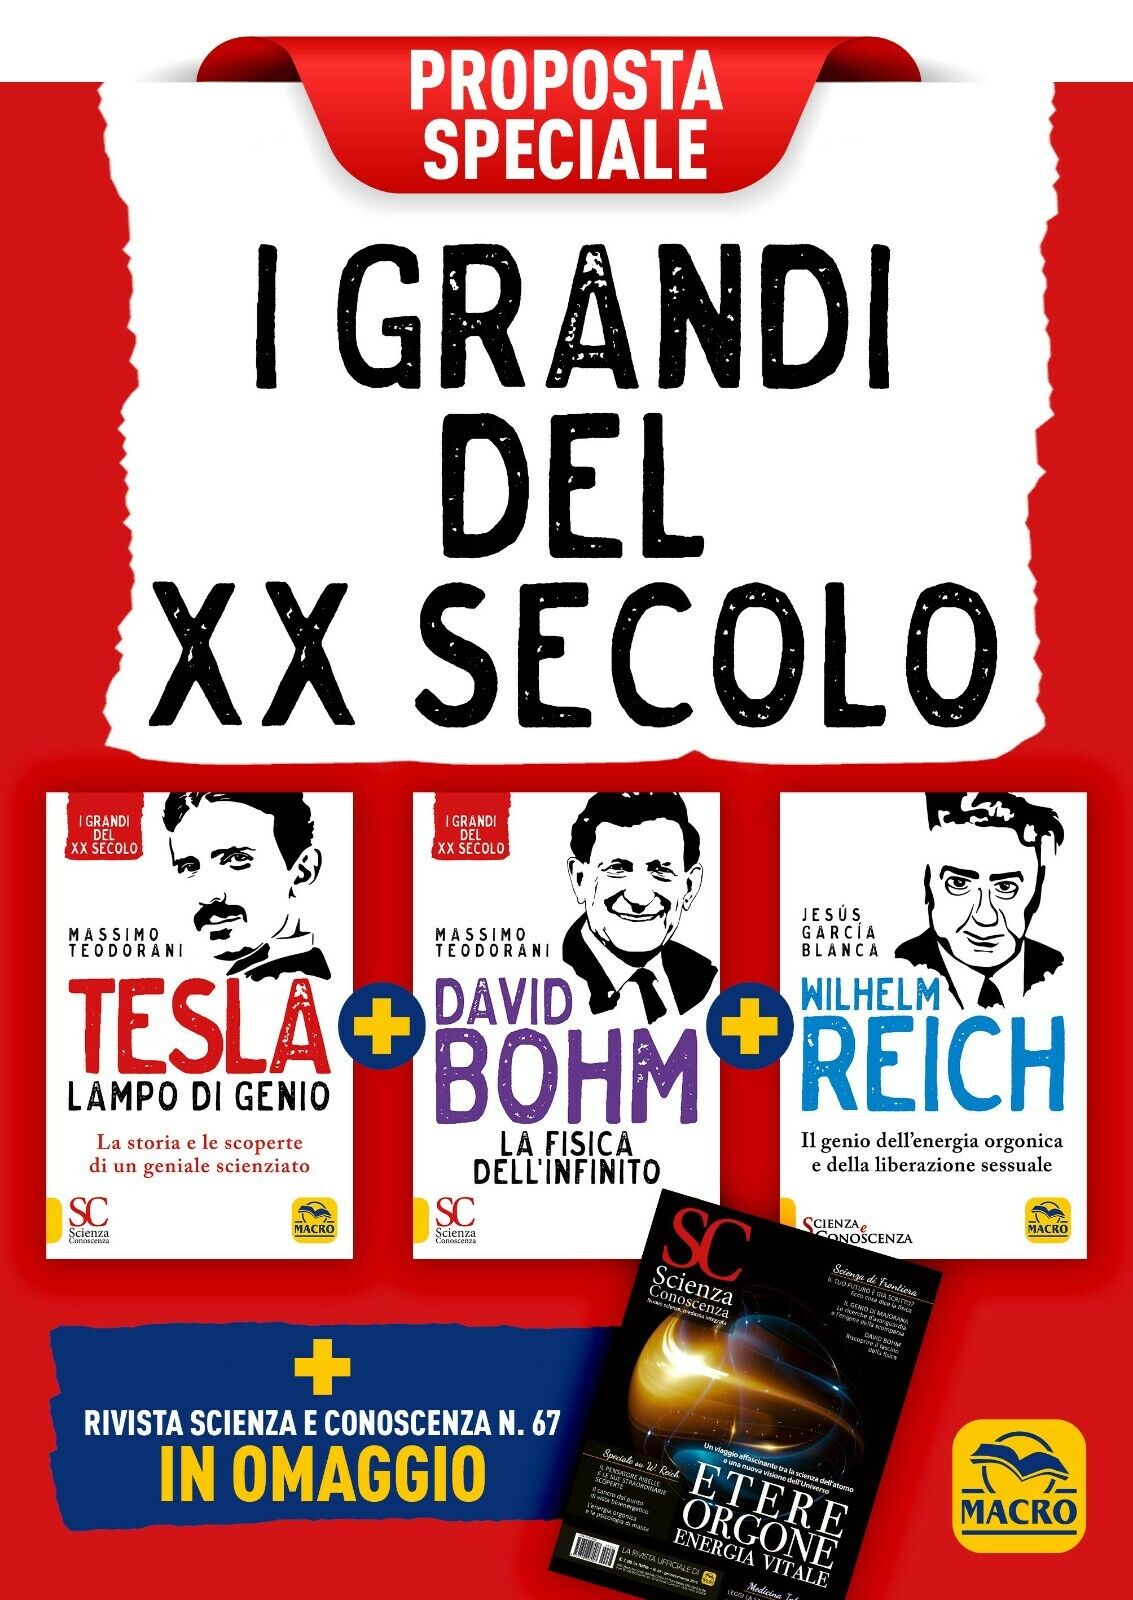 I Grandi del XX secolo - Proposta Speciale di Aa.vv.,  2021,  Macro Edizioni